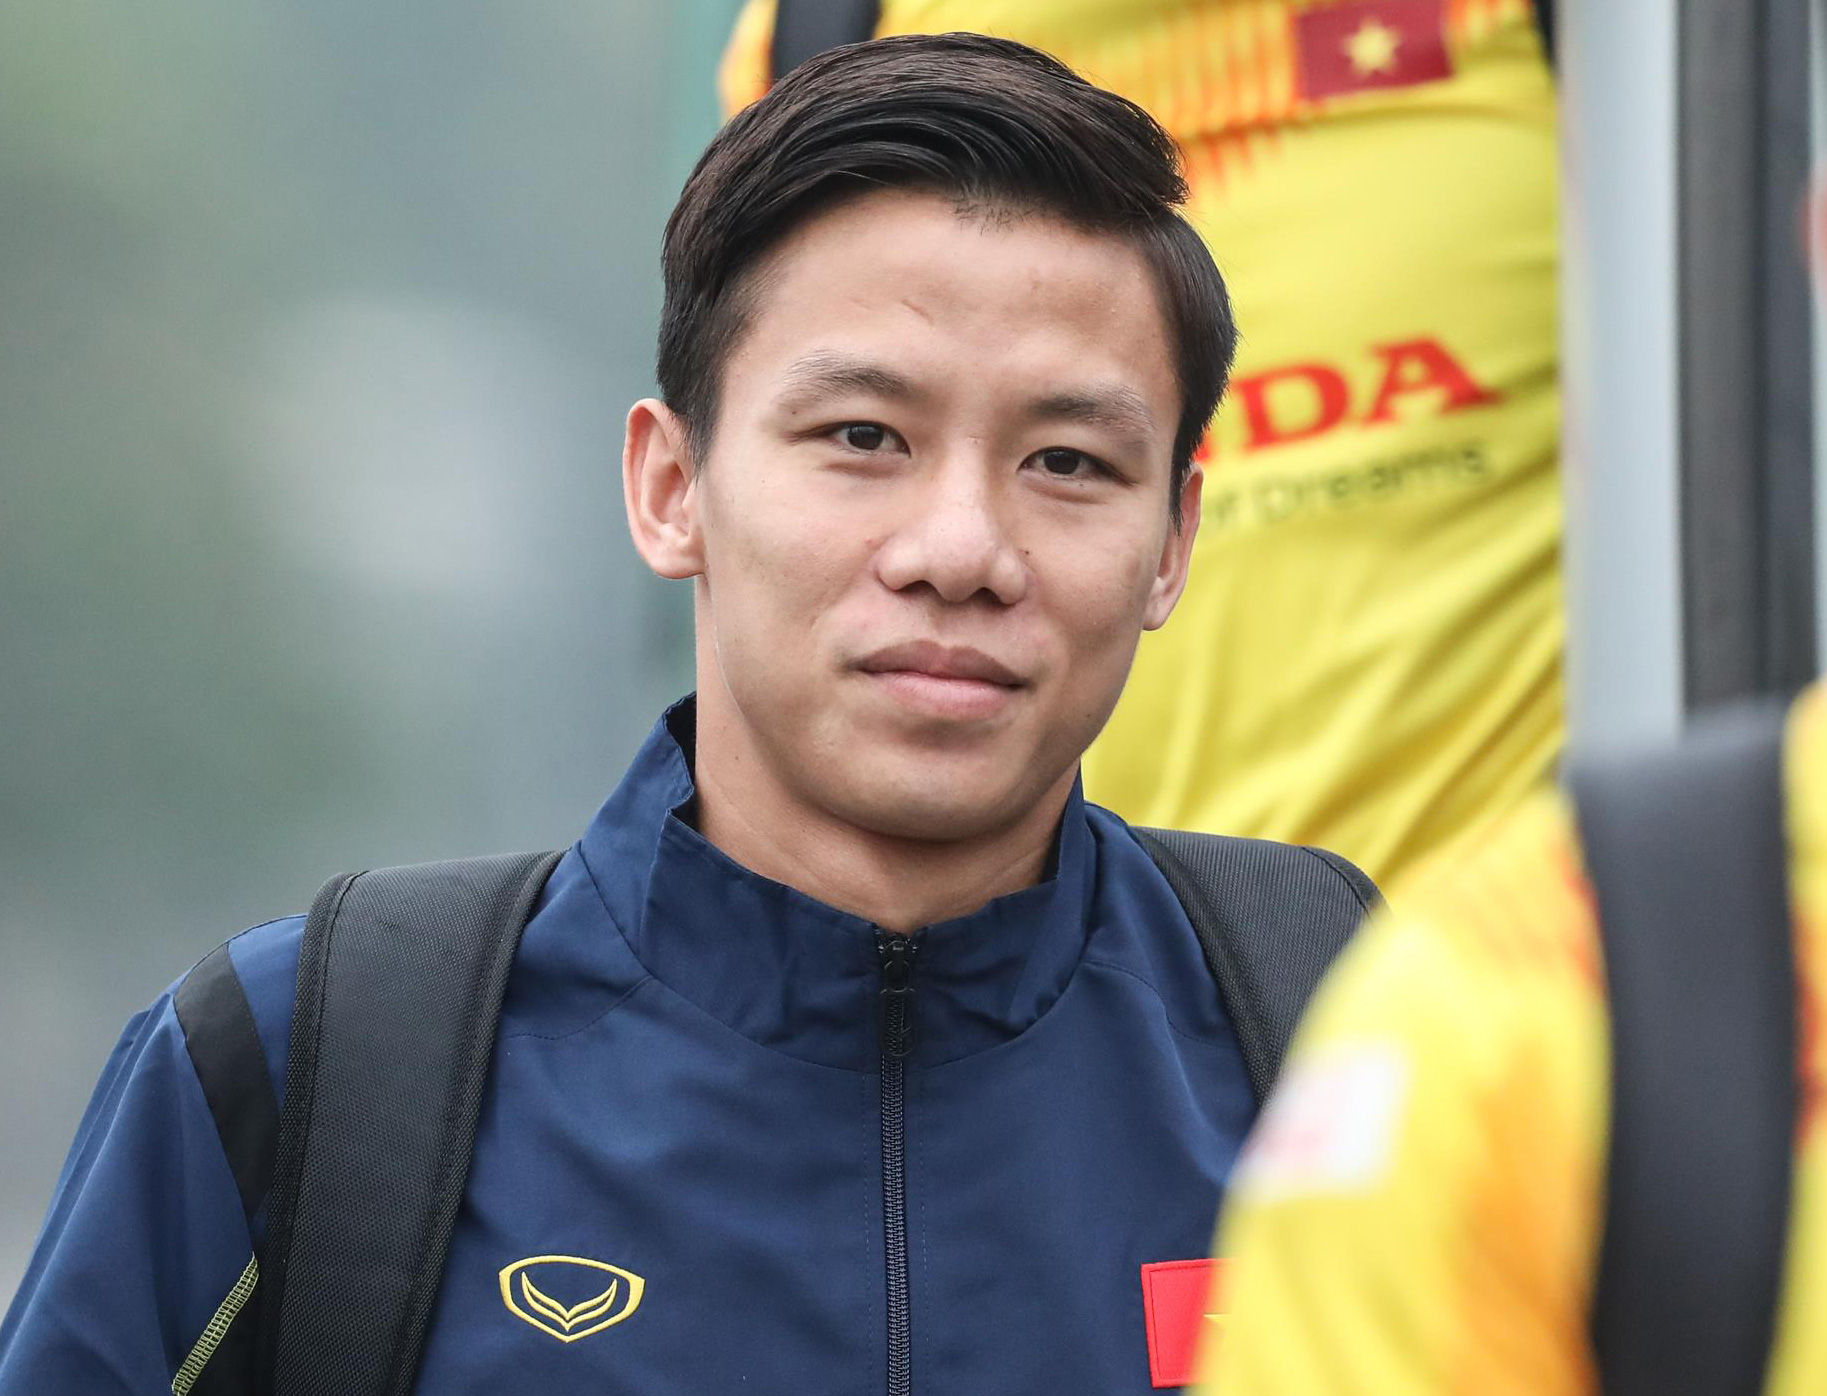 Đội trưởng: Đội trưởng là trái tim của một nhóm và Quế Ngọc Hải là một trong những đội trưởng tài ba nhất của bóng đá Việt Nam. Với khả năng lãnh đạo tuyệt vời và tinh thần chiến đấu mãnh liệt, anh ta đã giúp đội tuyển quốc gia dẫn đầu trong nhiều trận đấu đầy cảm hứng.